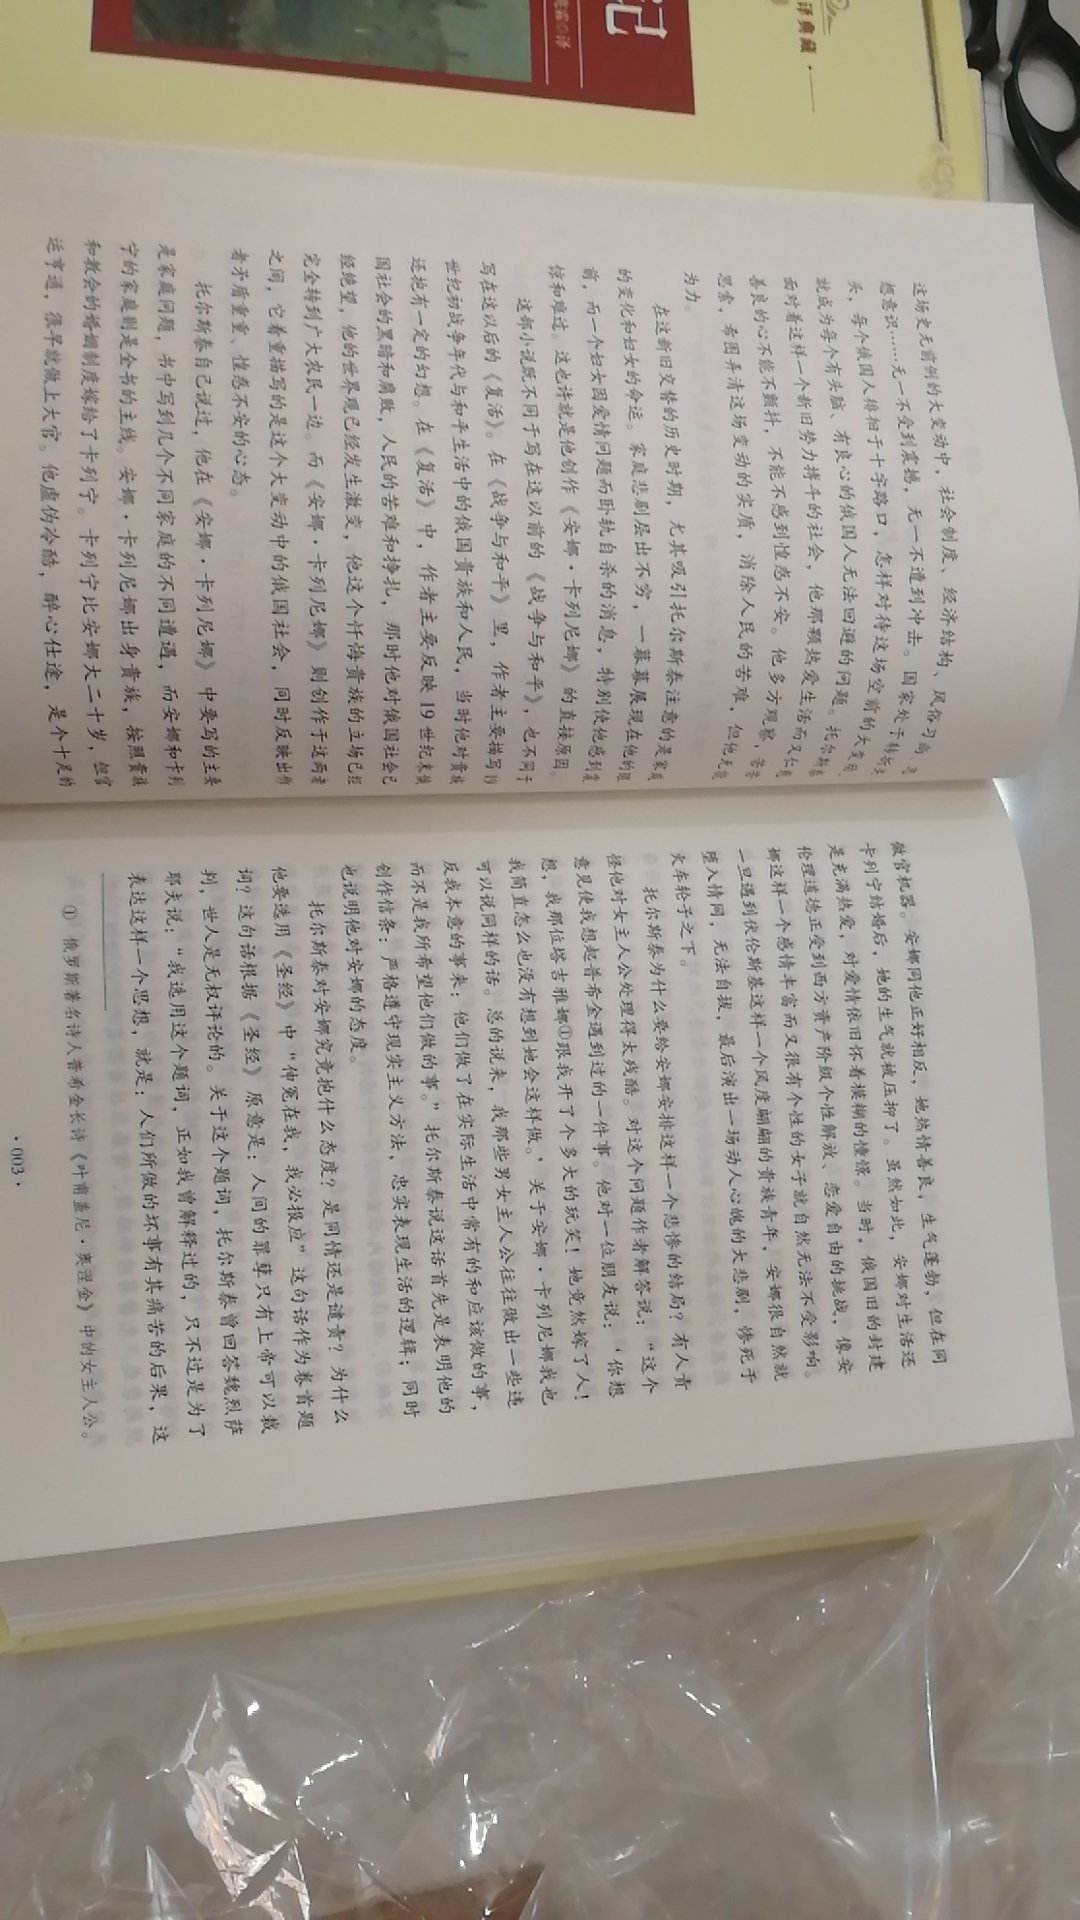 列夫托尔斯泰著作都能有两部入围世界十大名著，可见全球没人给能把《红楼梦》、《论语》等著作翻译好！或者说汉语言的确是太难了，他们翻译不来。把汉文学代表作介绍出去，成了奢望。